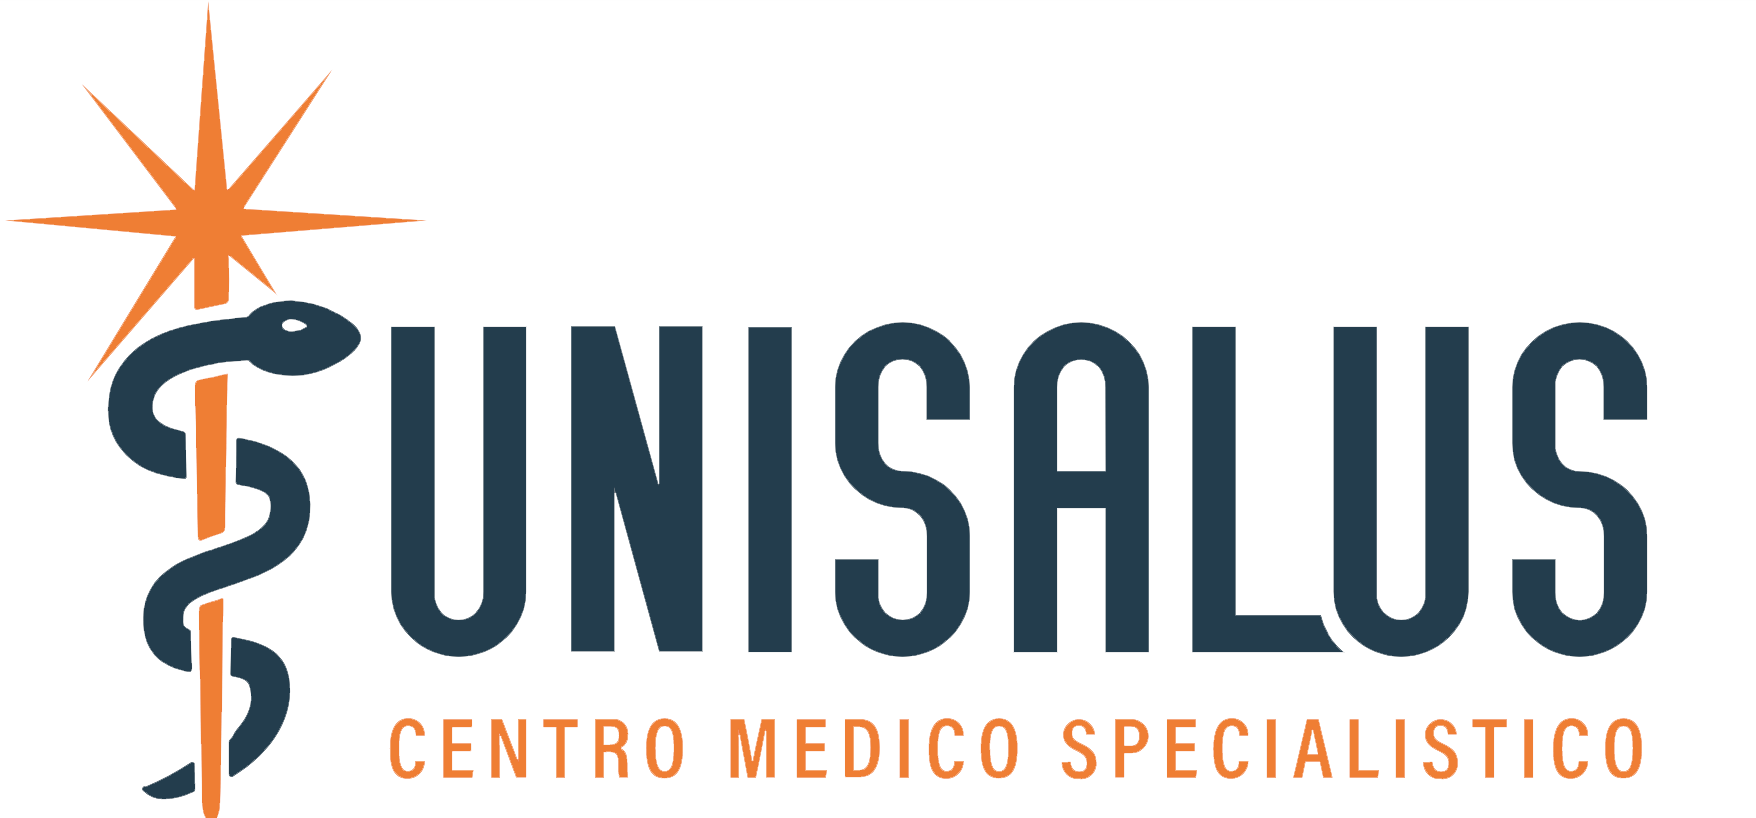 centro medico unisalus